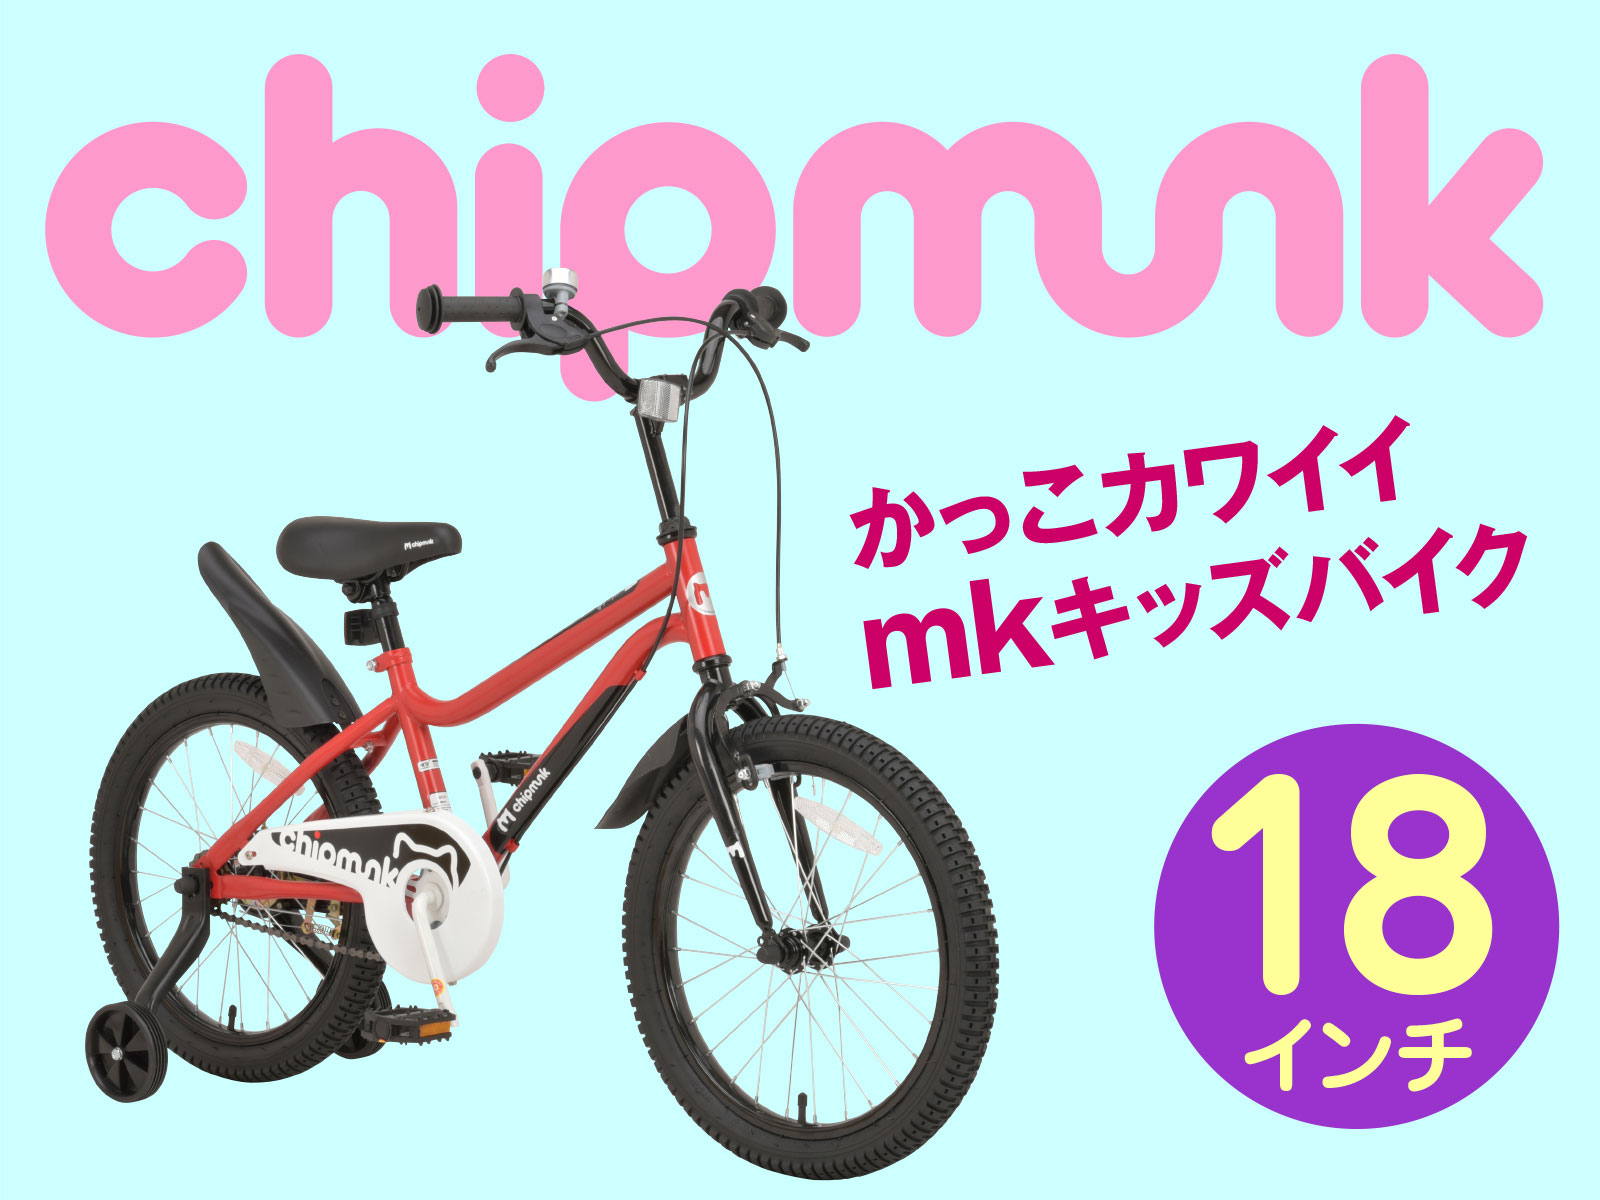 chipmunk_mk18-1